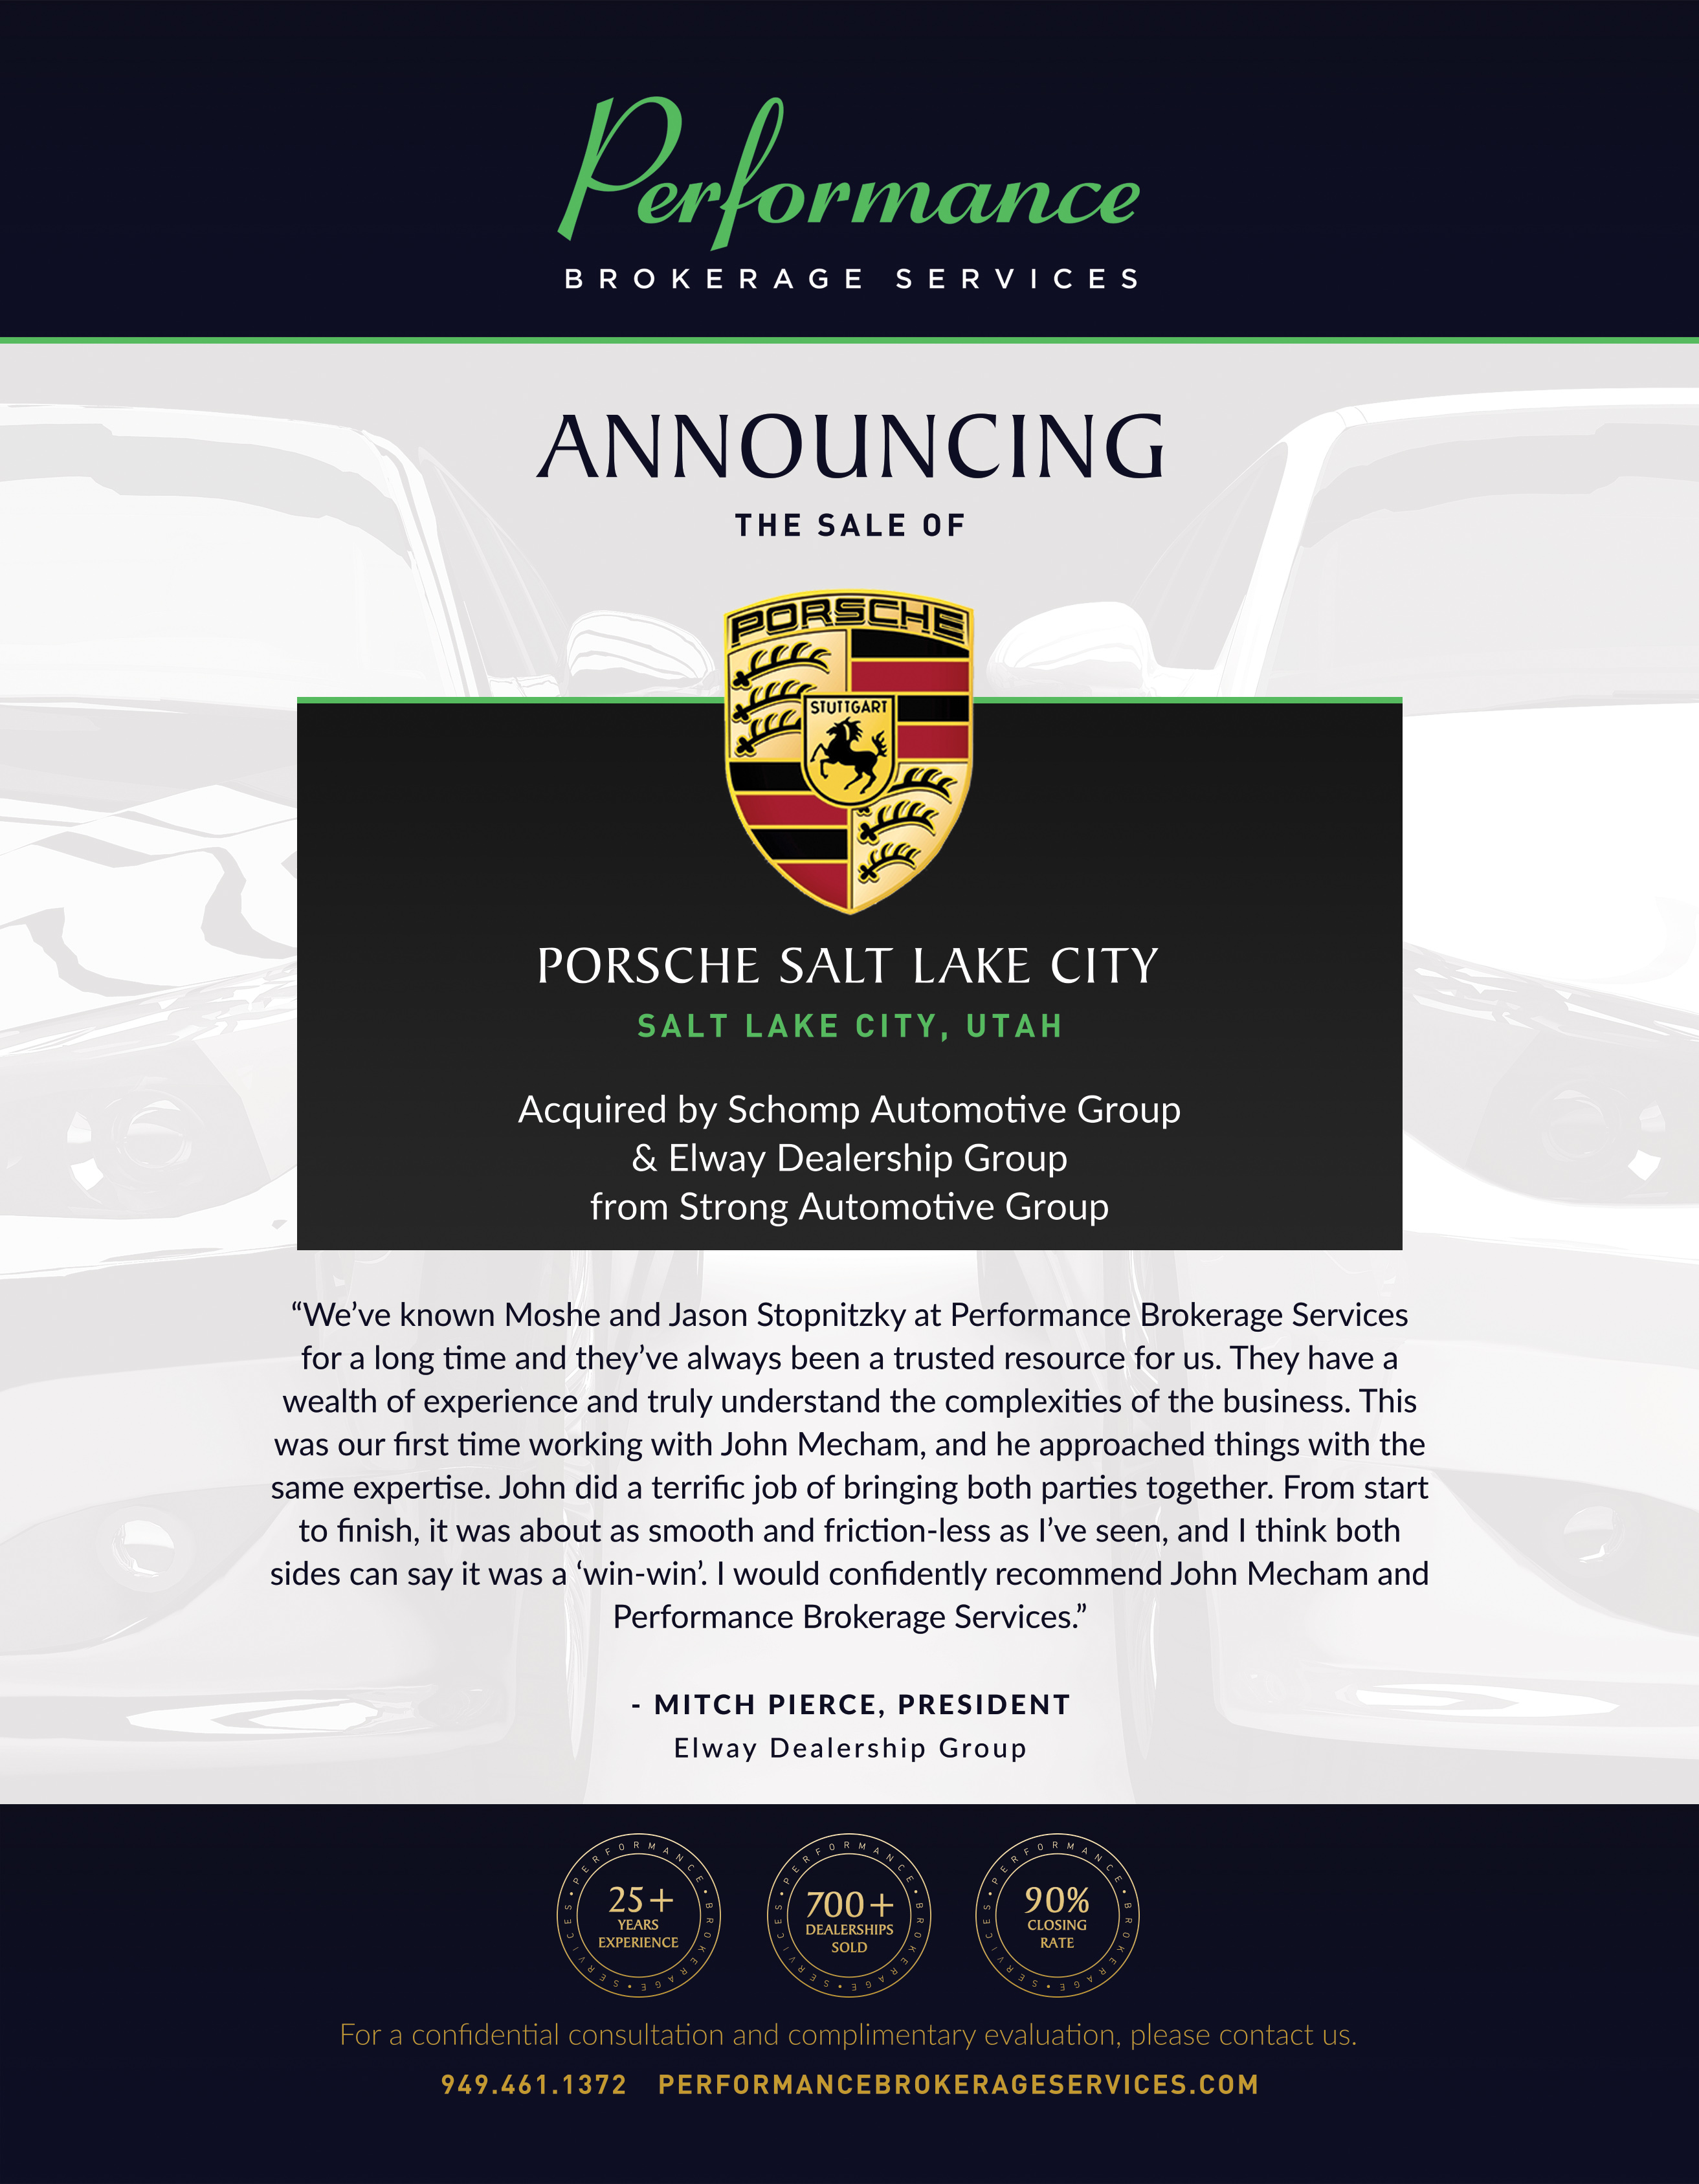 Performance Brokerage Services Announces the Sale of Porsche Salt Lake City